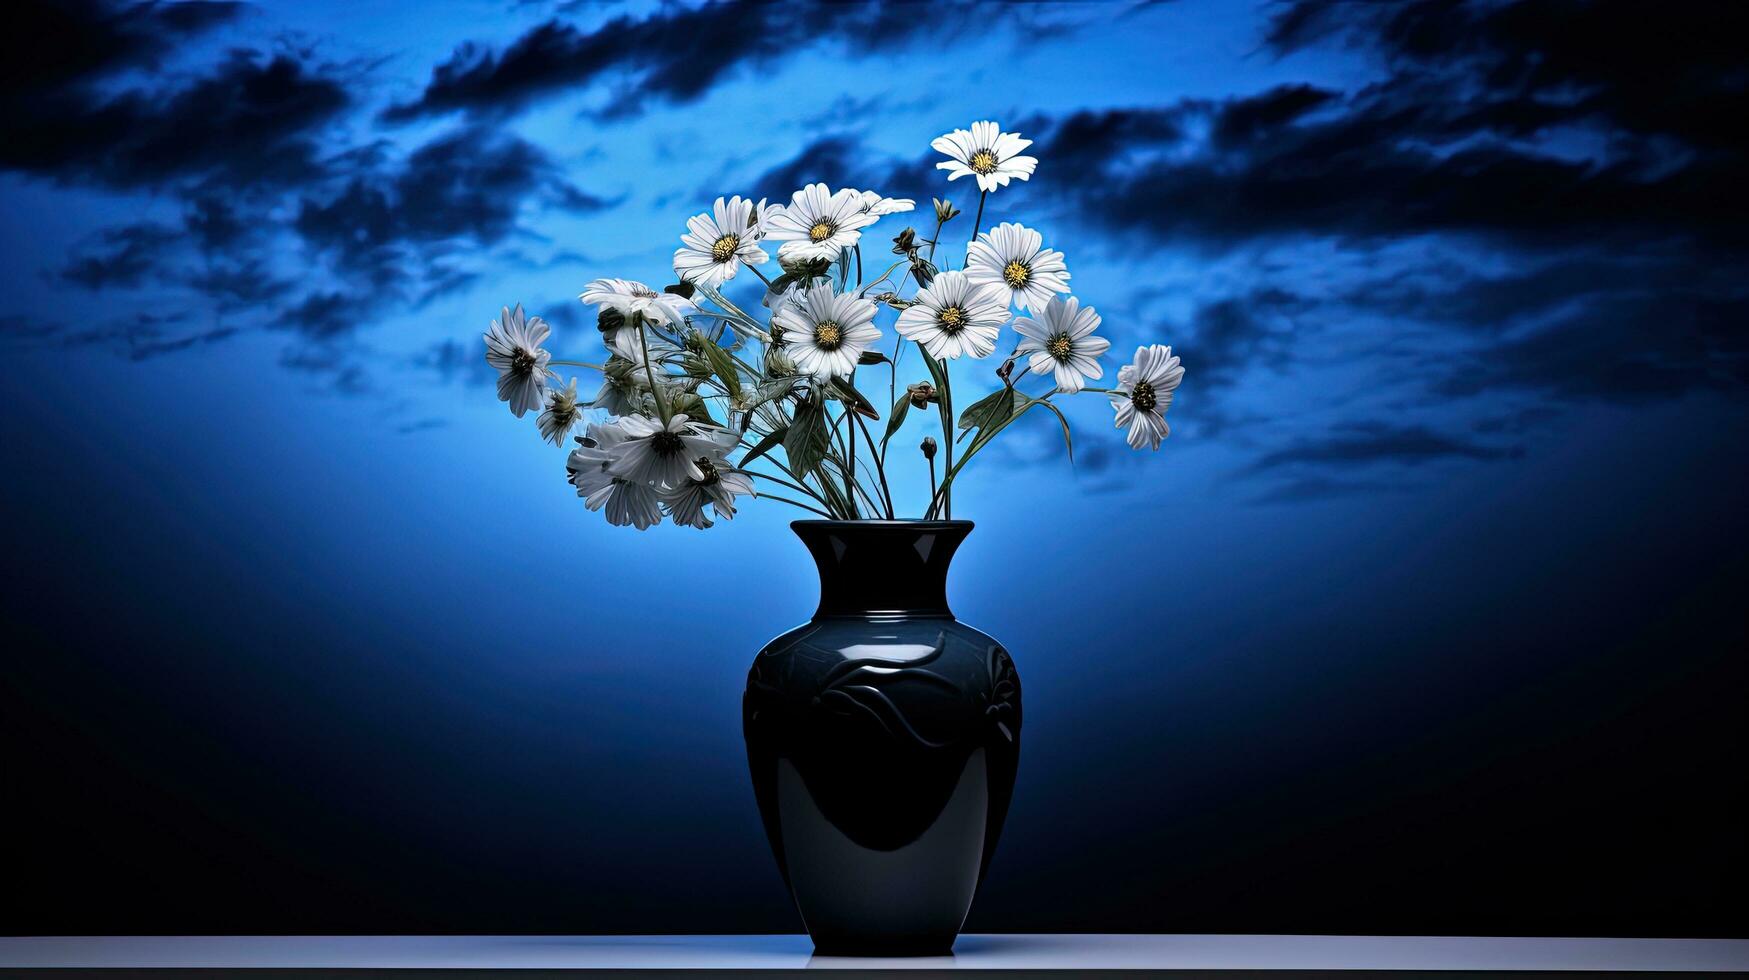 Himmel Hintergrund mit Vase im Vorderseite mit Blumen. Silhouette Konzept foto